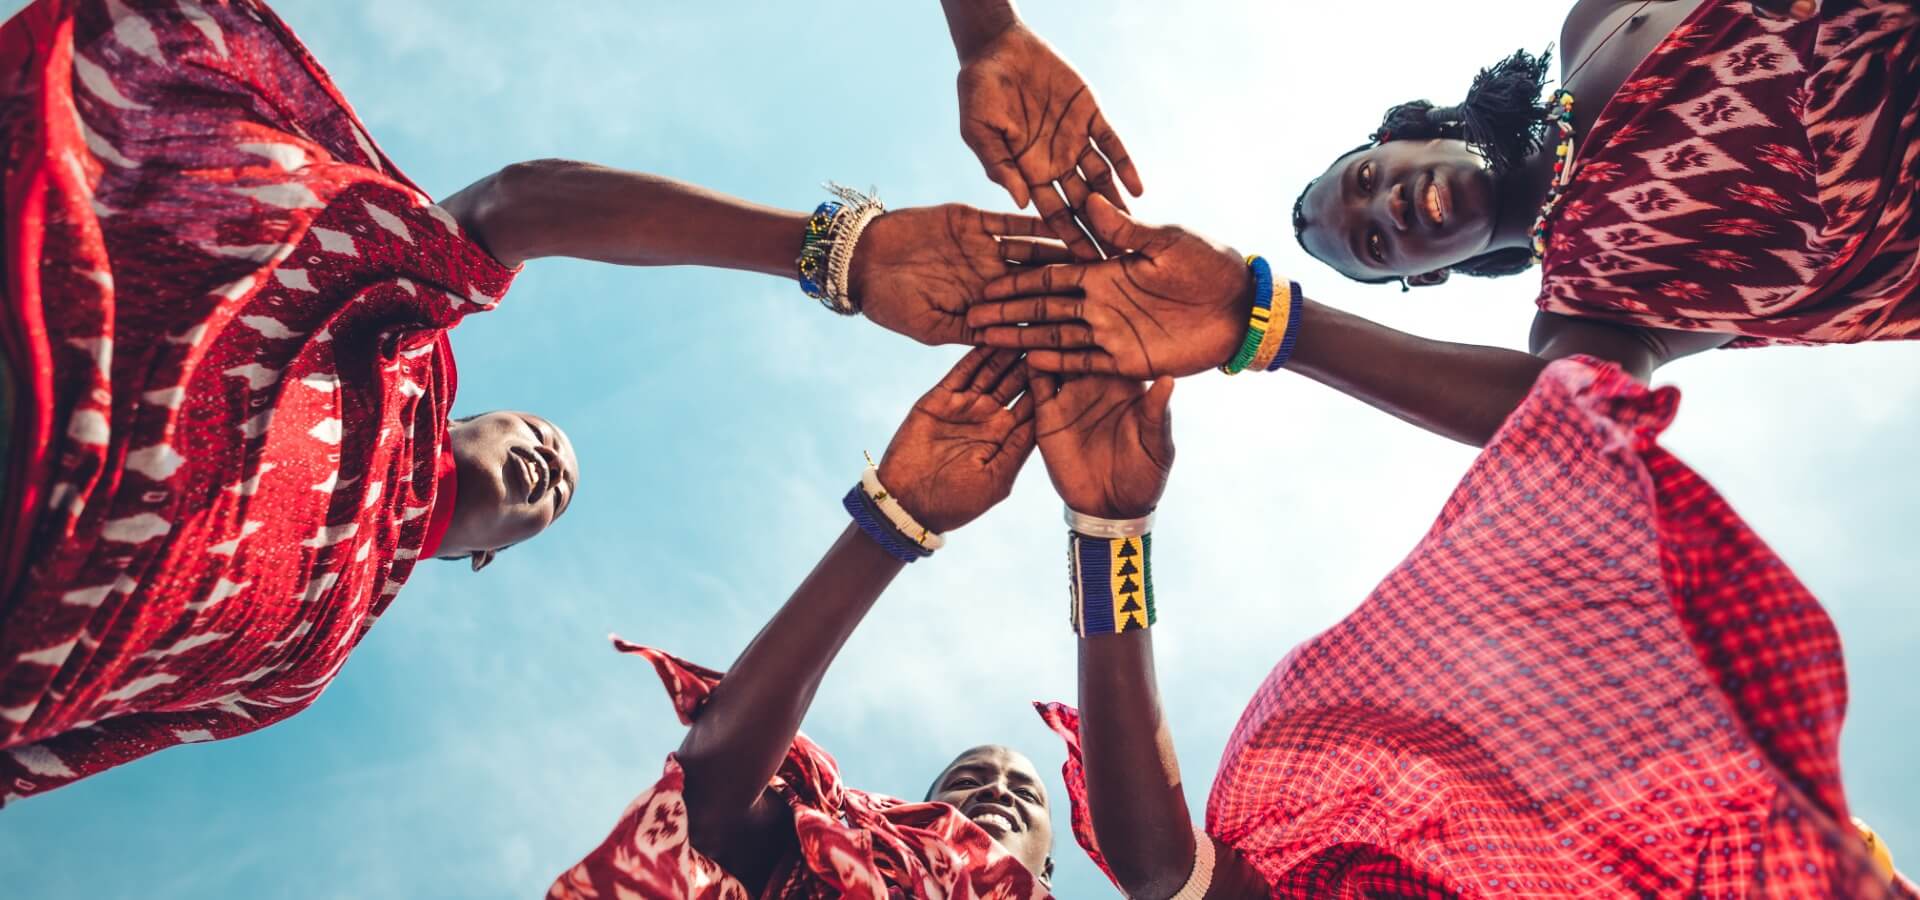 Grupo de mujeres afrodescendientes uniendo las manos, toma en contrapicado con el cielo de fondo.